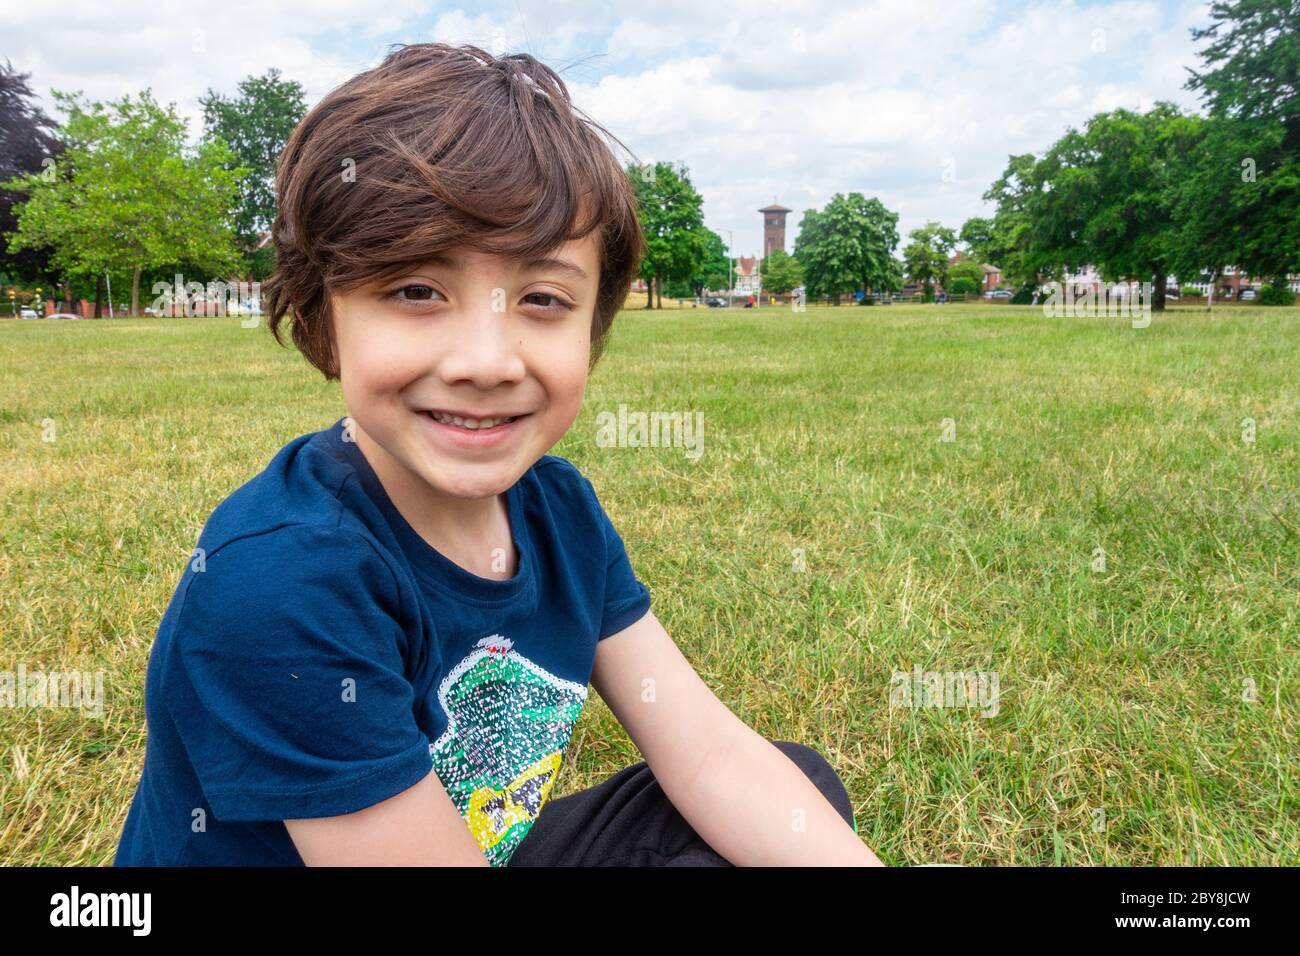 Un jeune garçon est assis sur le sol du parc, sourit et pose un portrait. Banque D'Images